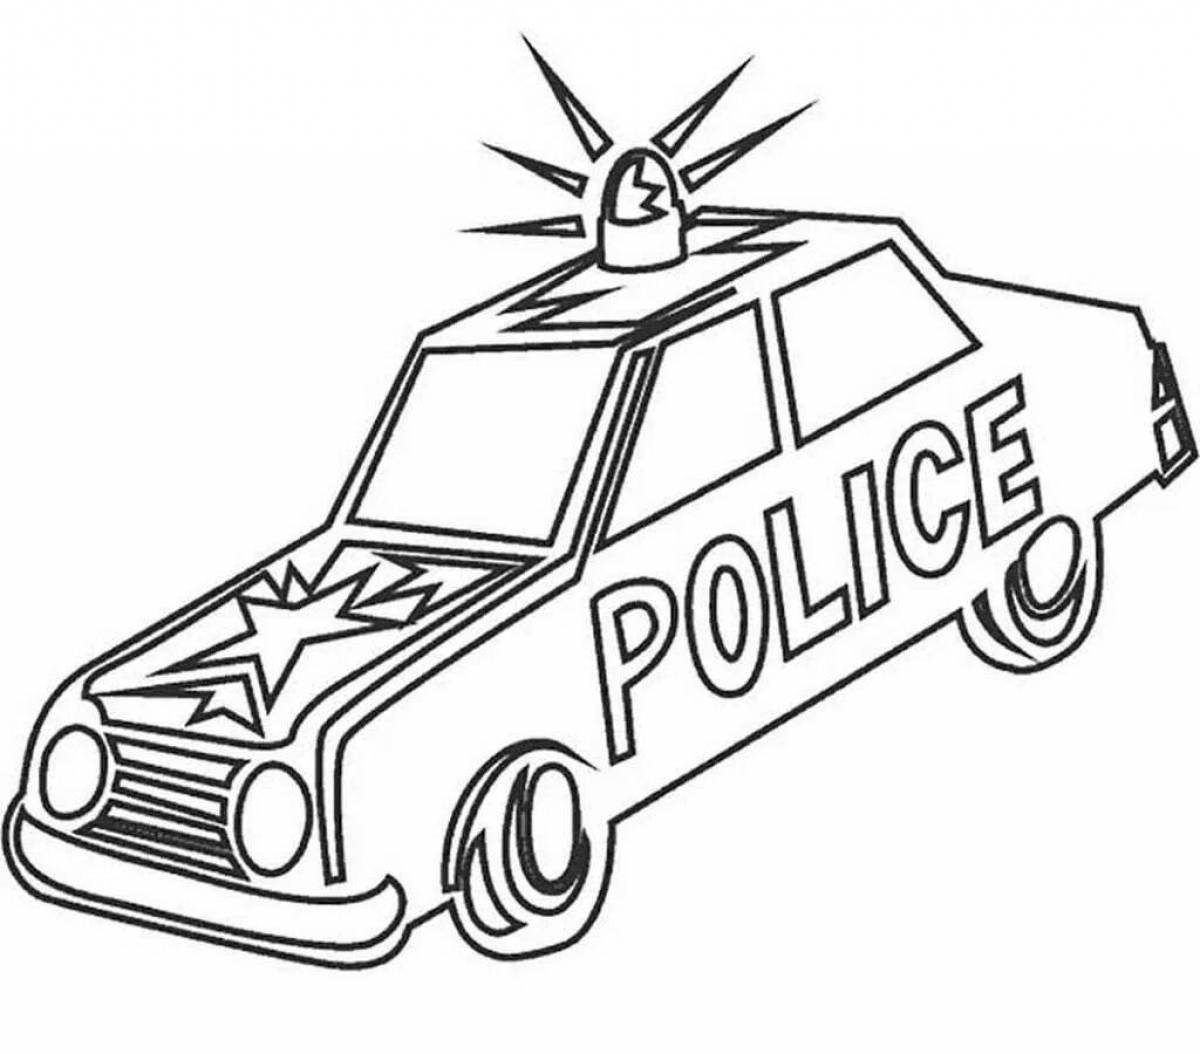 Cute preschool police car coloring book